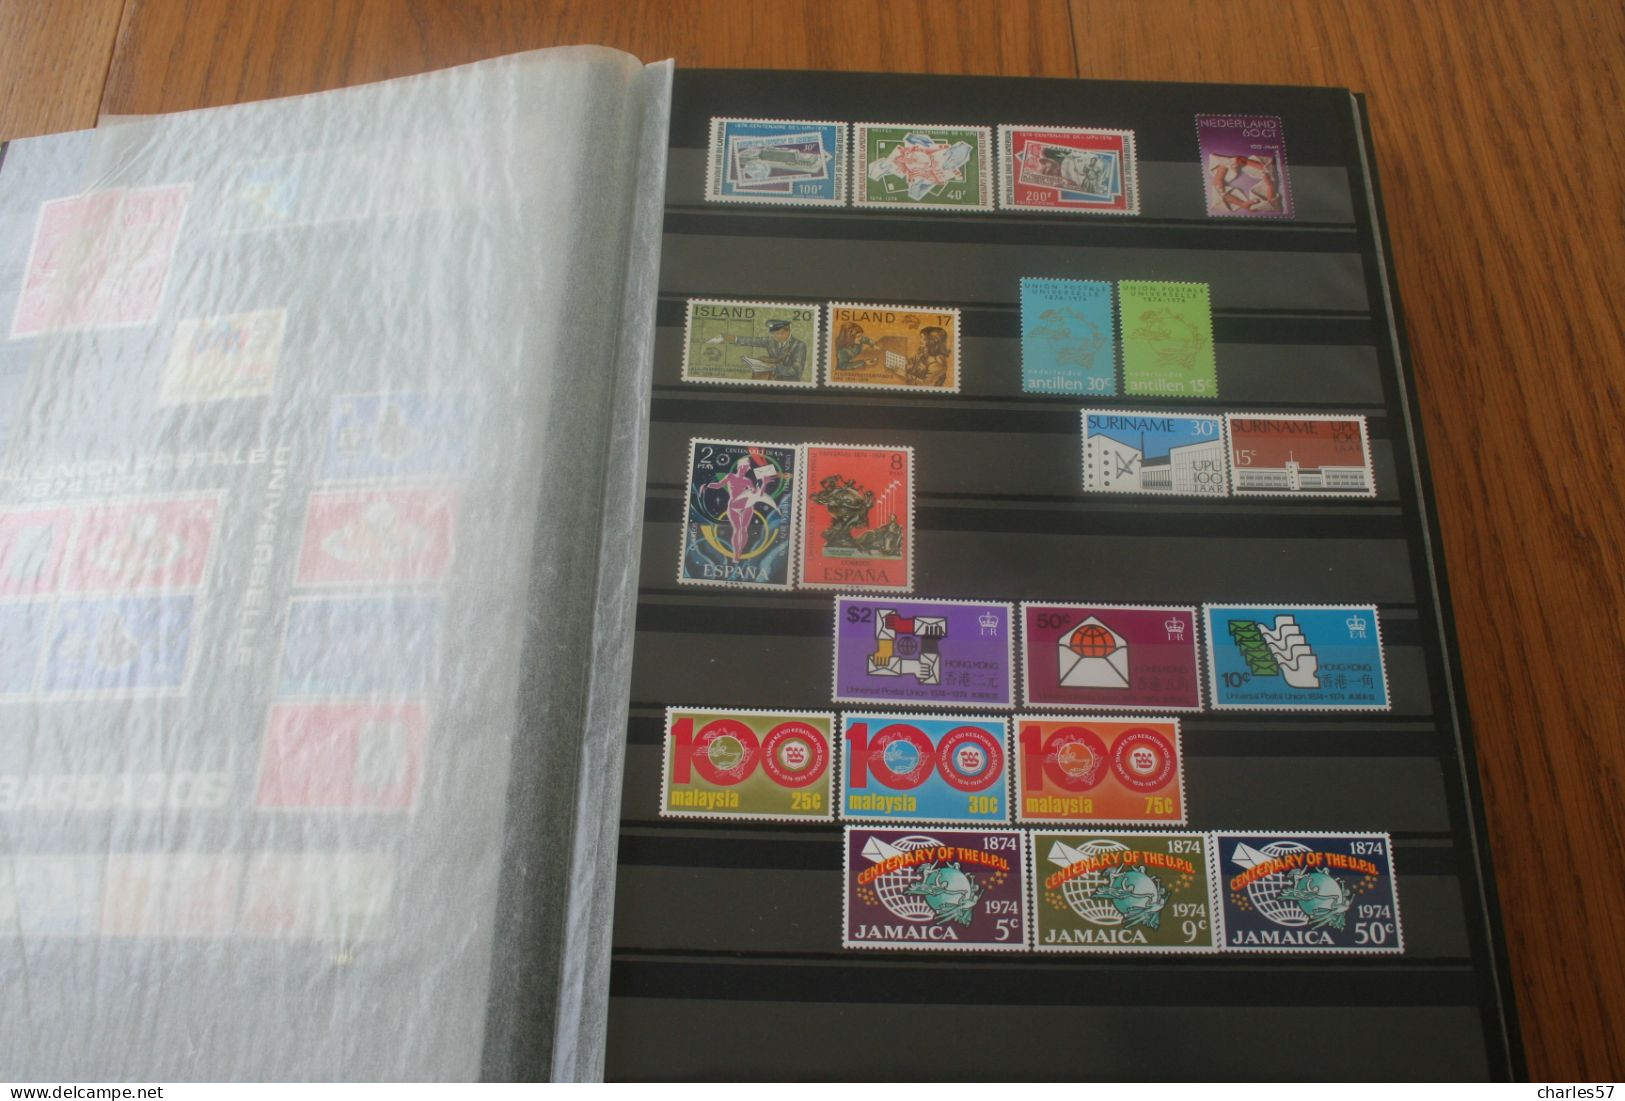 U.P.U. 1974, collection regroupant 121 pays en 376 timbres et blocs **